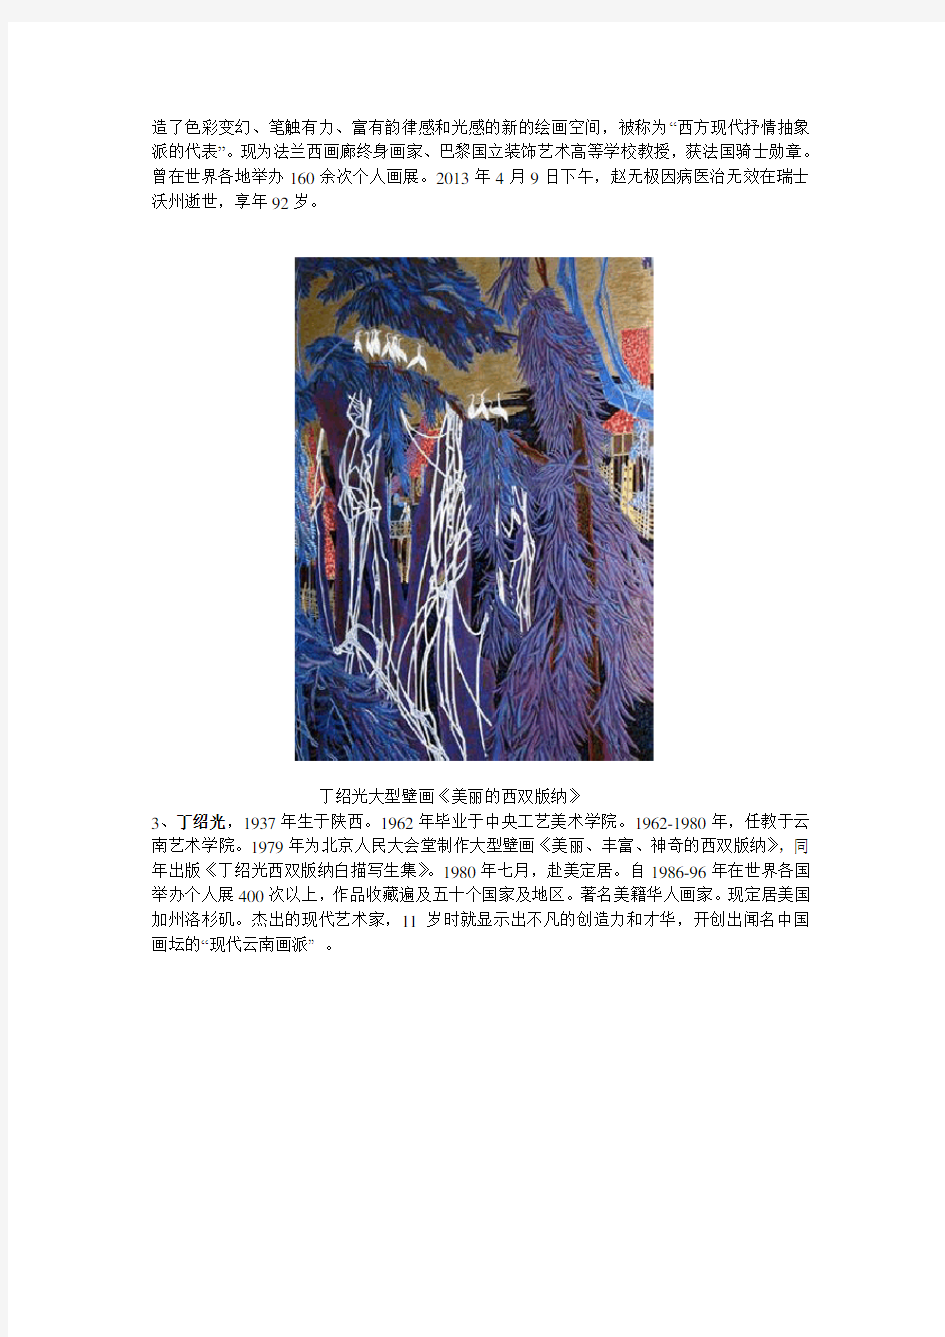 中国当代十大画家及代表作品欣赏